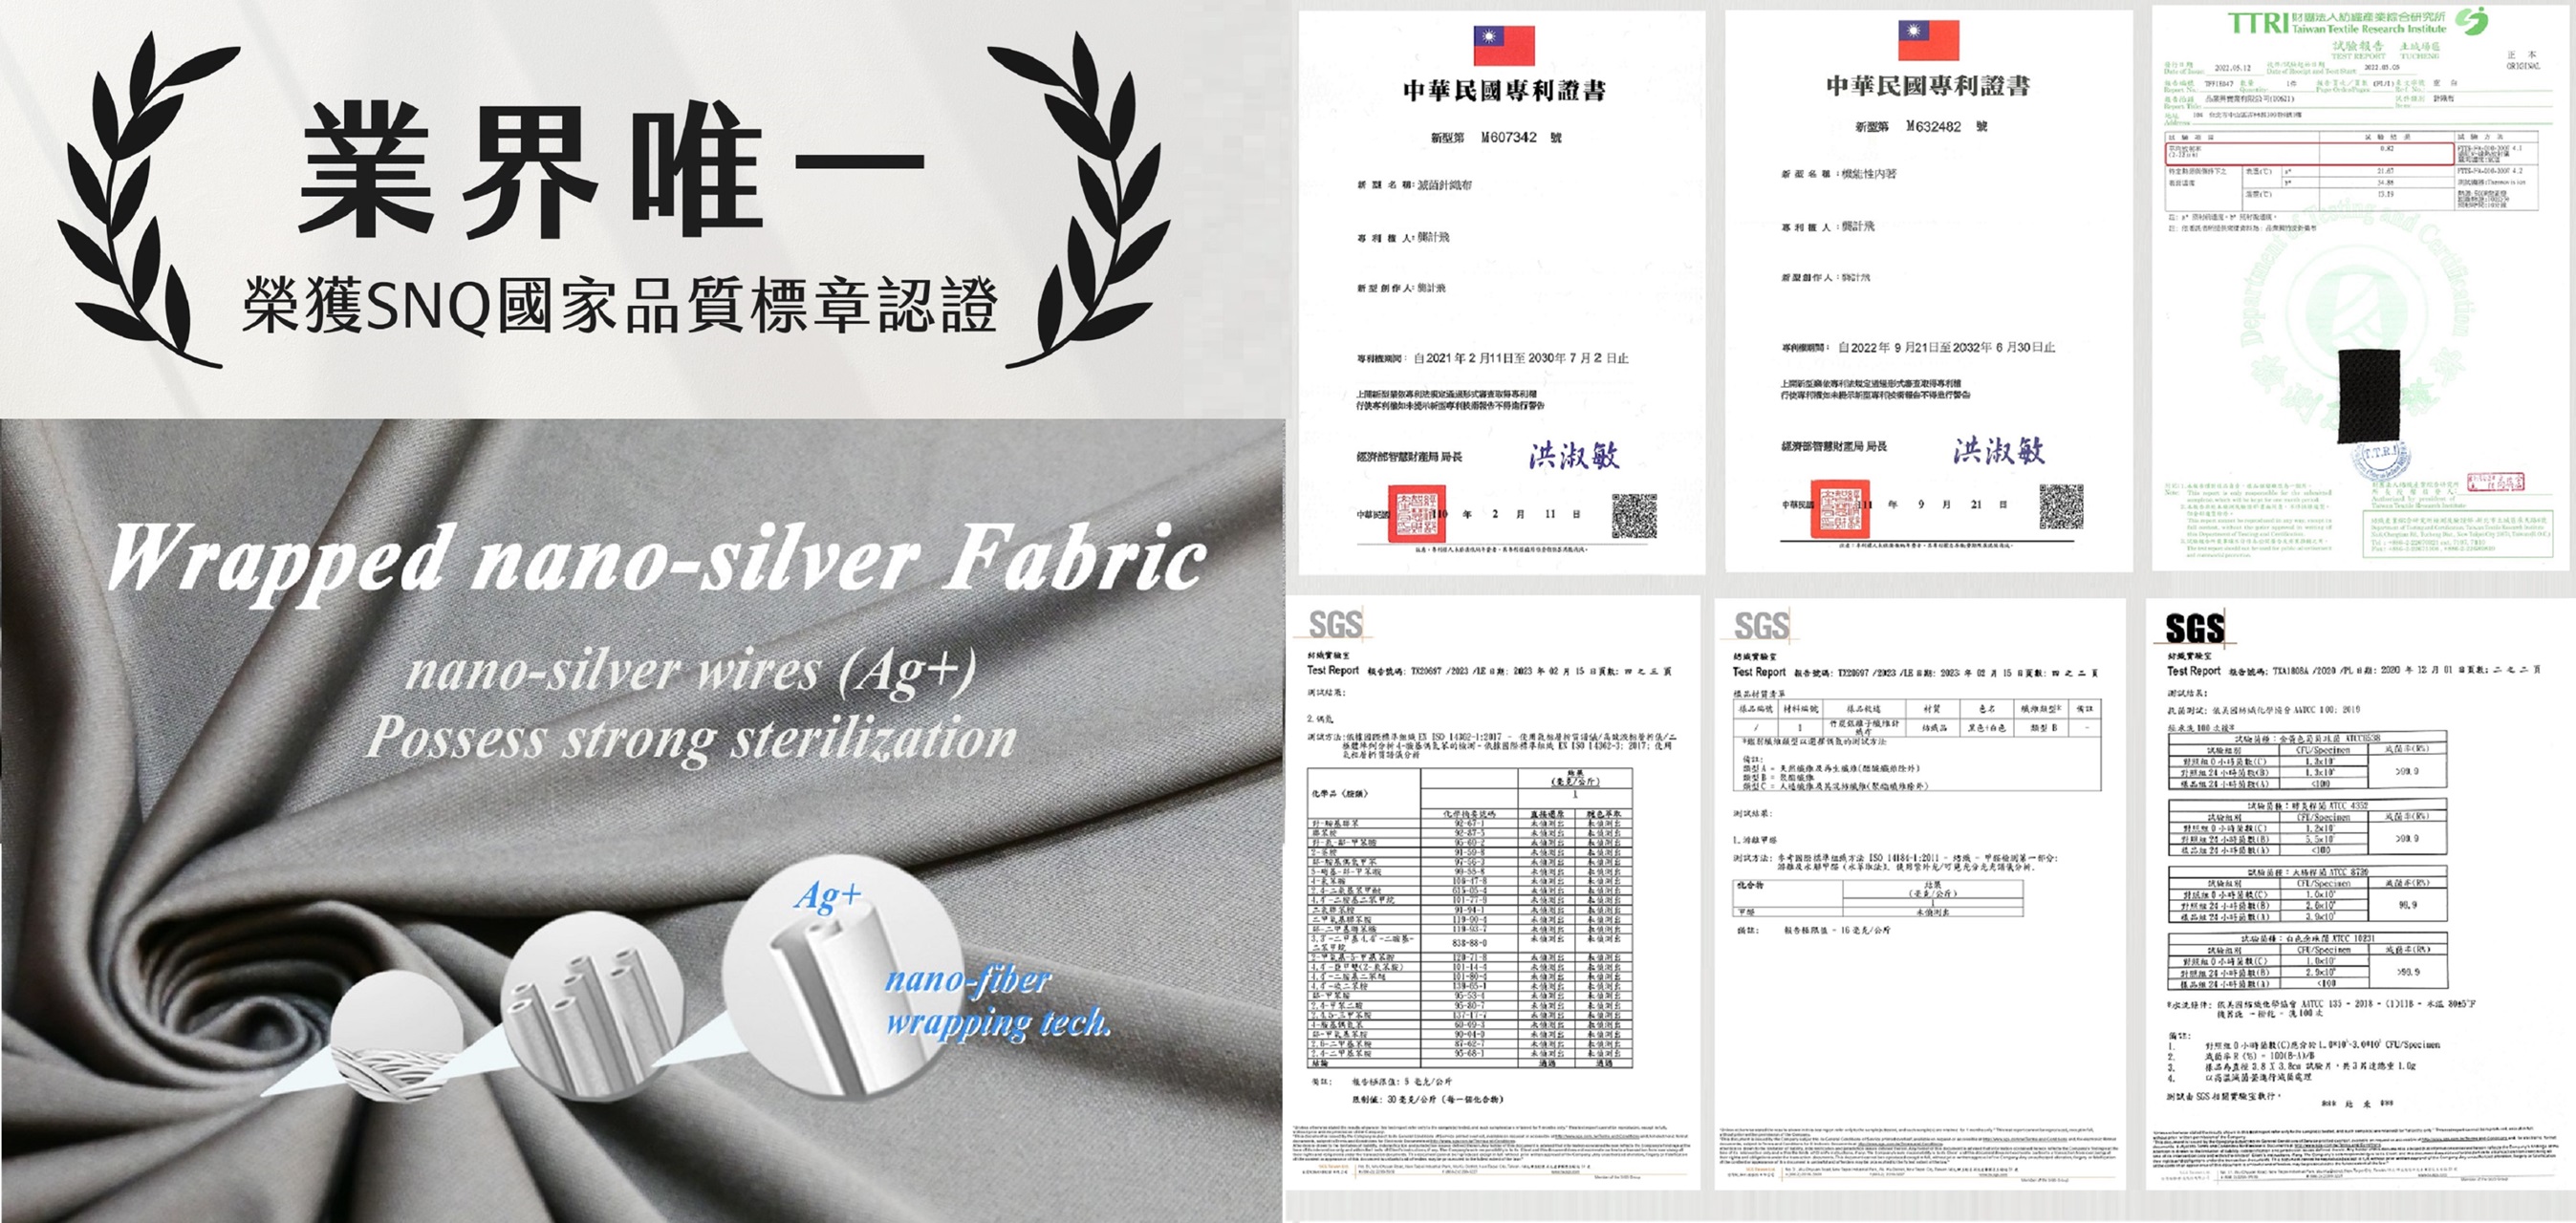 中華民國滅菌針織布專利證號M607342、第三方國際公正檢驗單位檢測報告